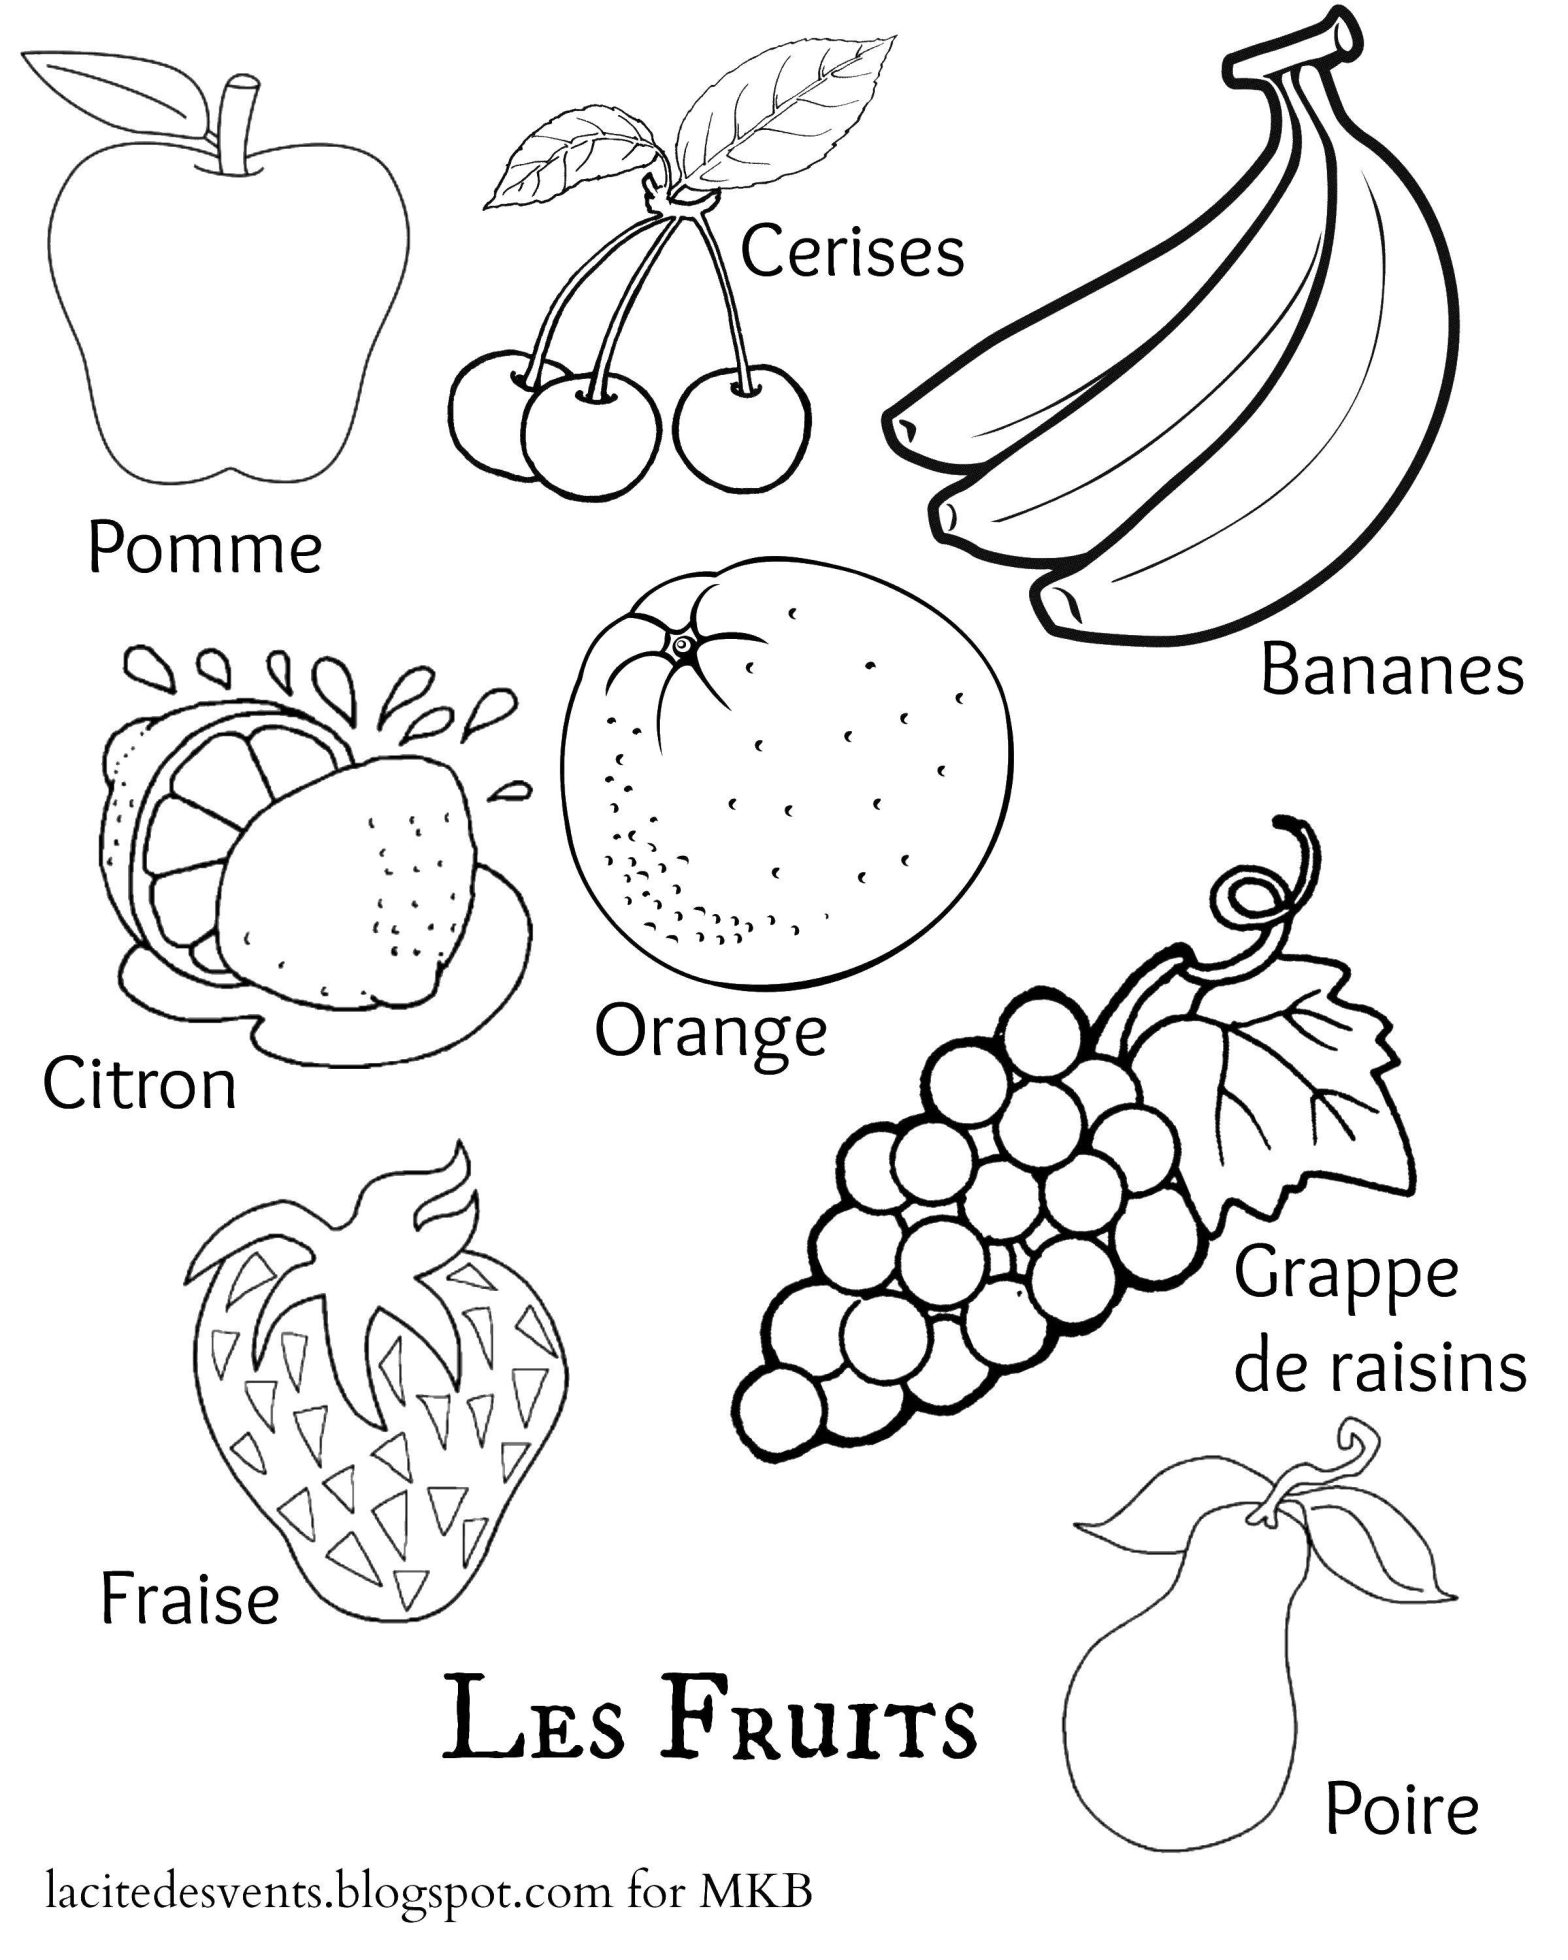 Раскраски фруктов и ягод для детей - развивающее занятие (фрукты, ягоды)